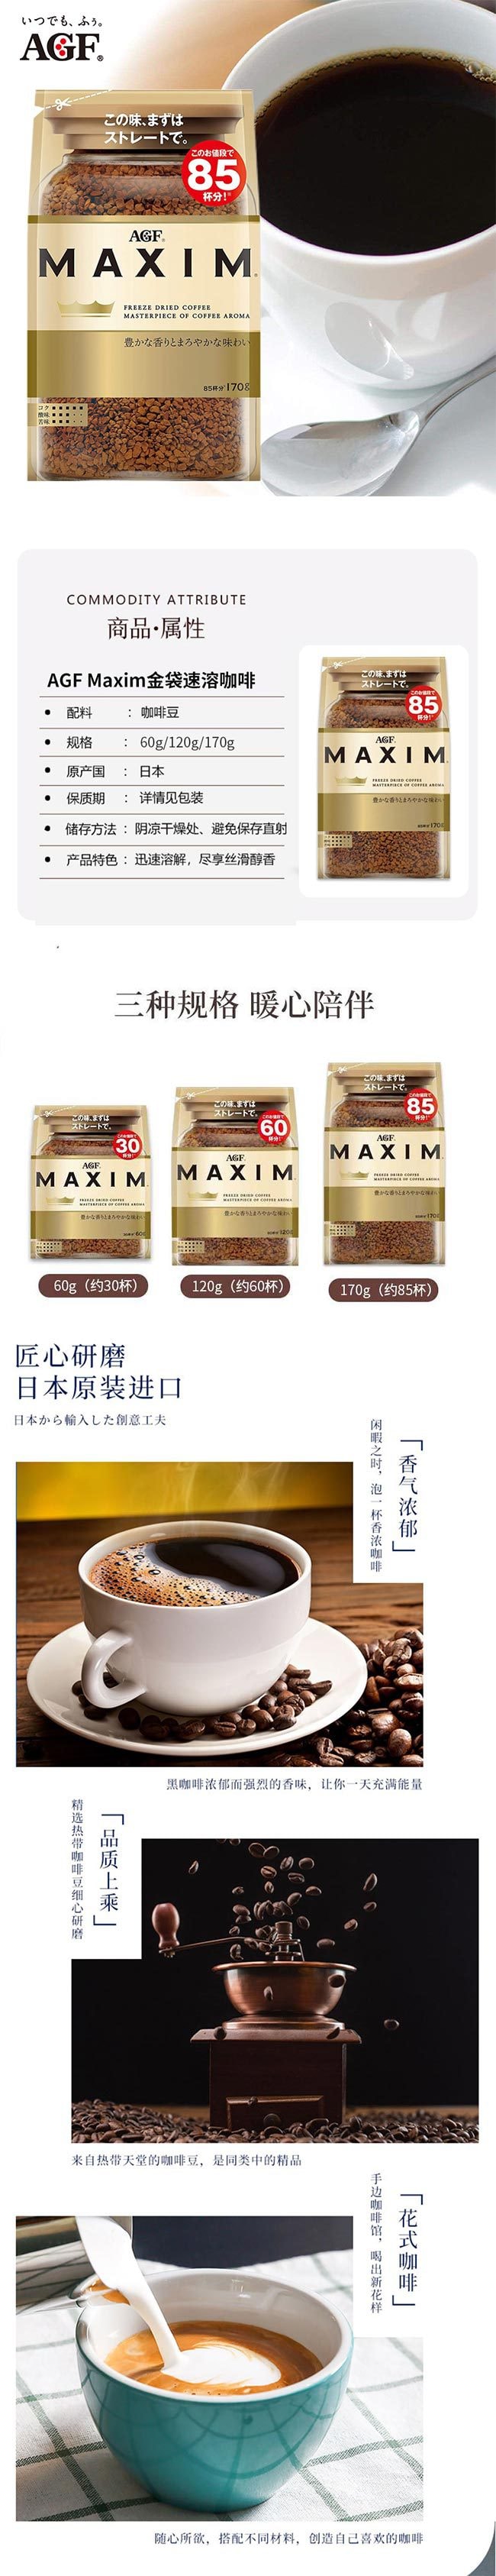 【日本直邮】AGF Maxim美式冻干黑咖啡速溶咖啡 袋装 120g